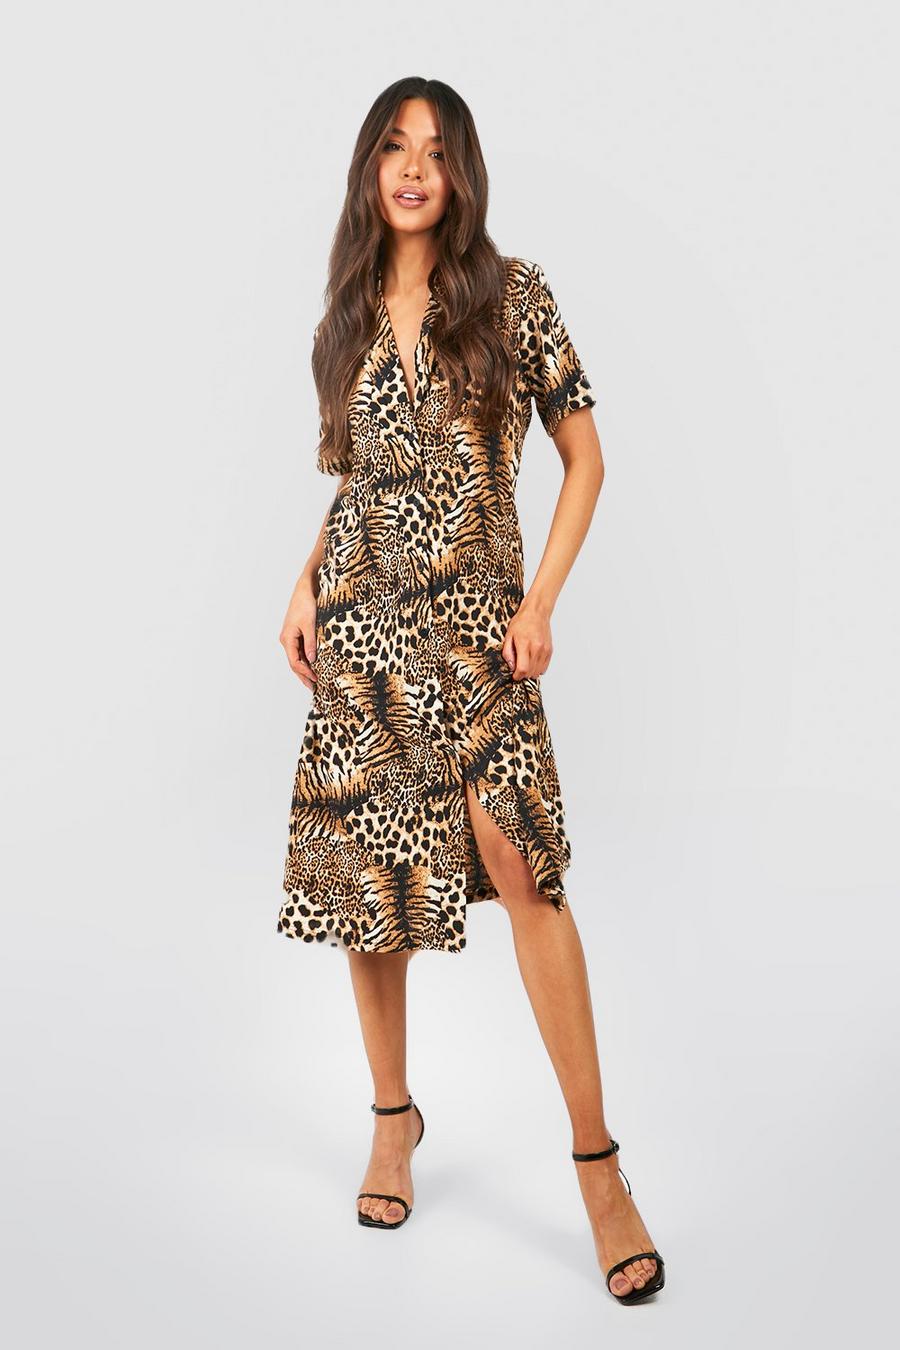 erosie spleet Obsessie Midi-jurk in de stijl van een shirt met een mix van tijger- en  luipaardprint | boohoo